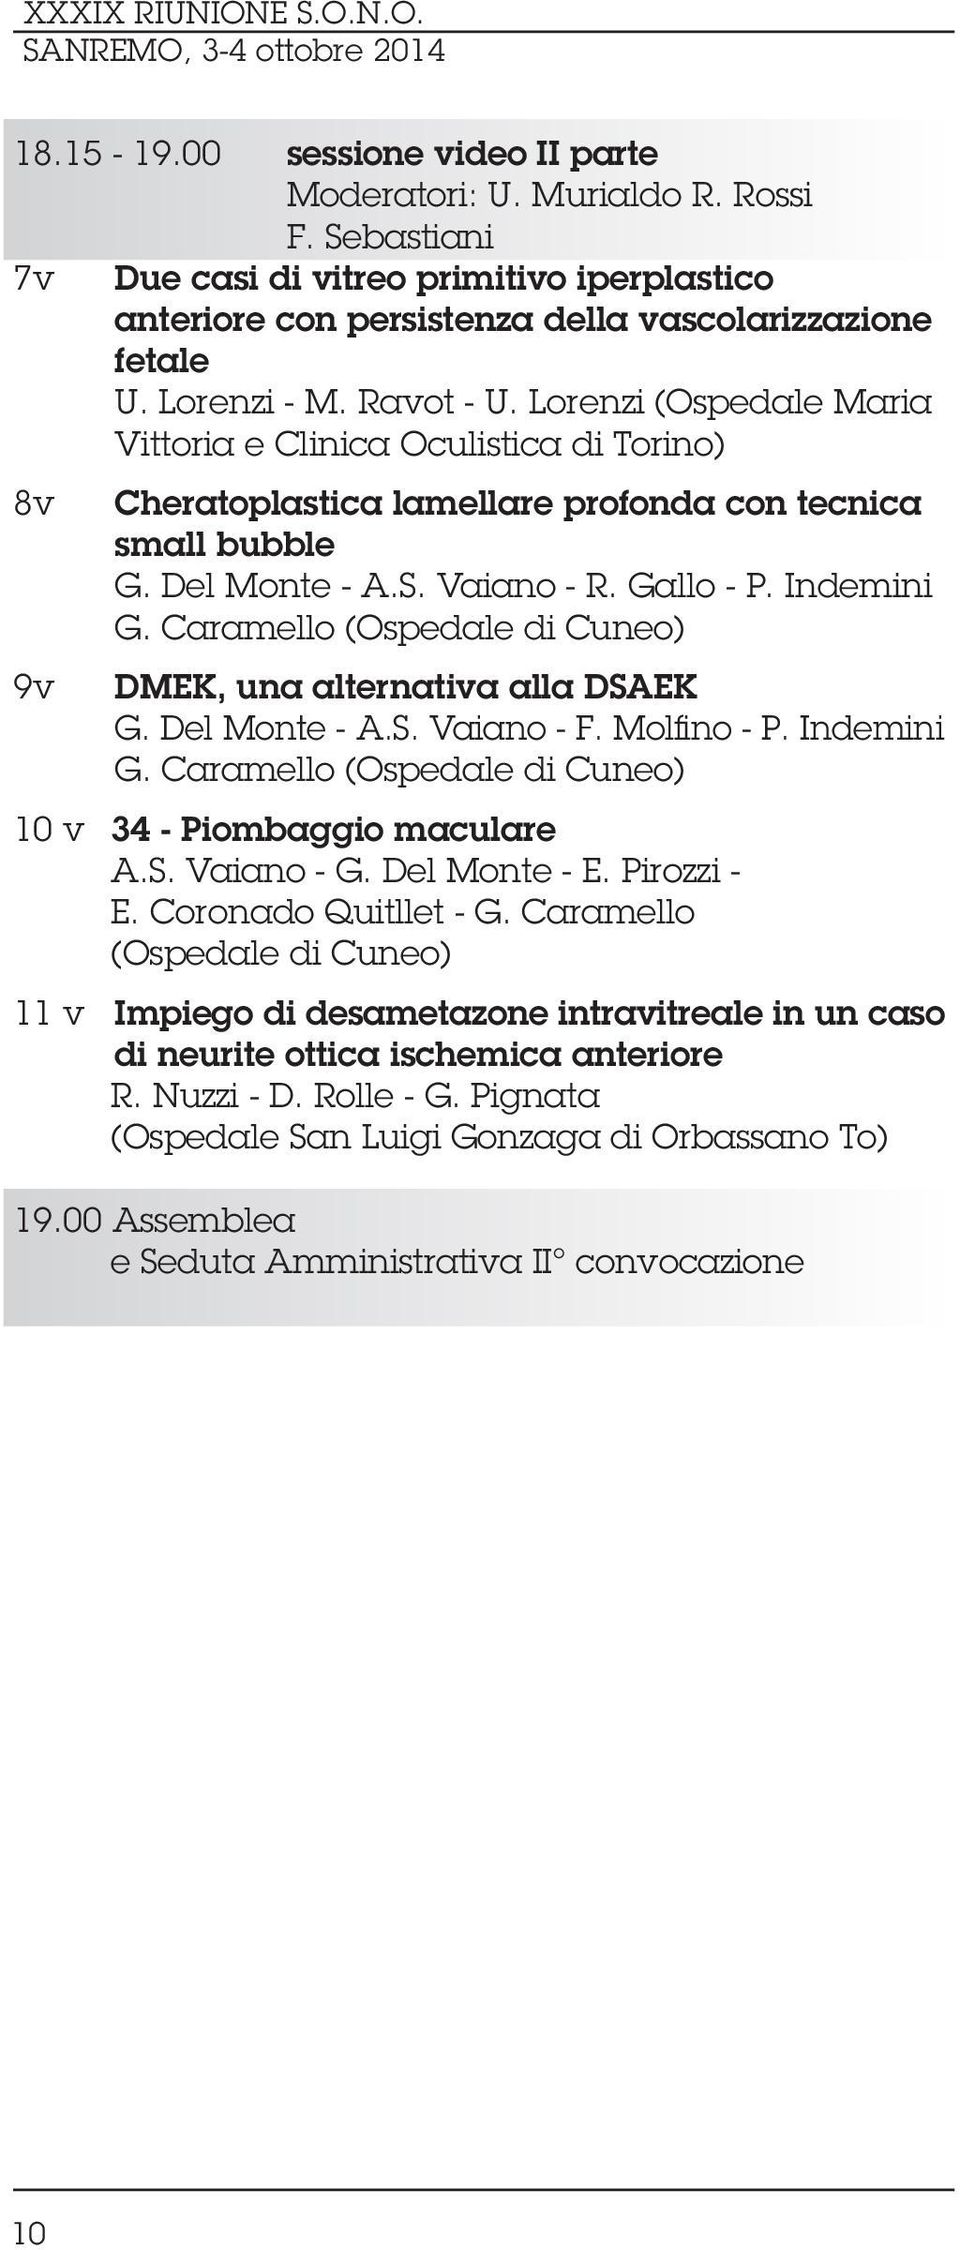 Caramello (Ospedale di Cuneo) DMEK, una alternativa alla DSAEK G. Del Monte - A.S. Vaiano - F. Molfino - P. Indemini G. Caramello (Ospedale di Cuneo) 10 v 34 - Piombaggio maculare A.S. Vaiano - G.